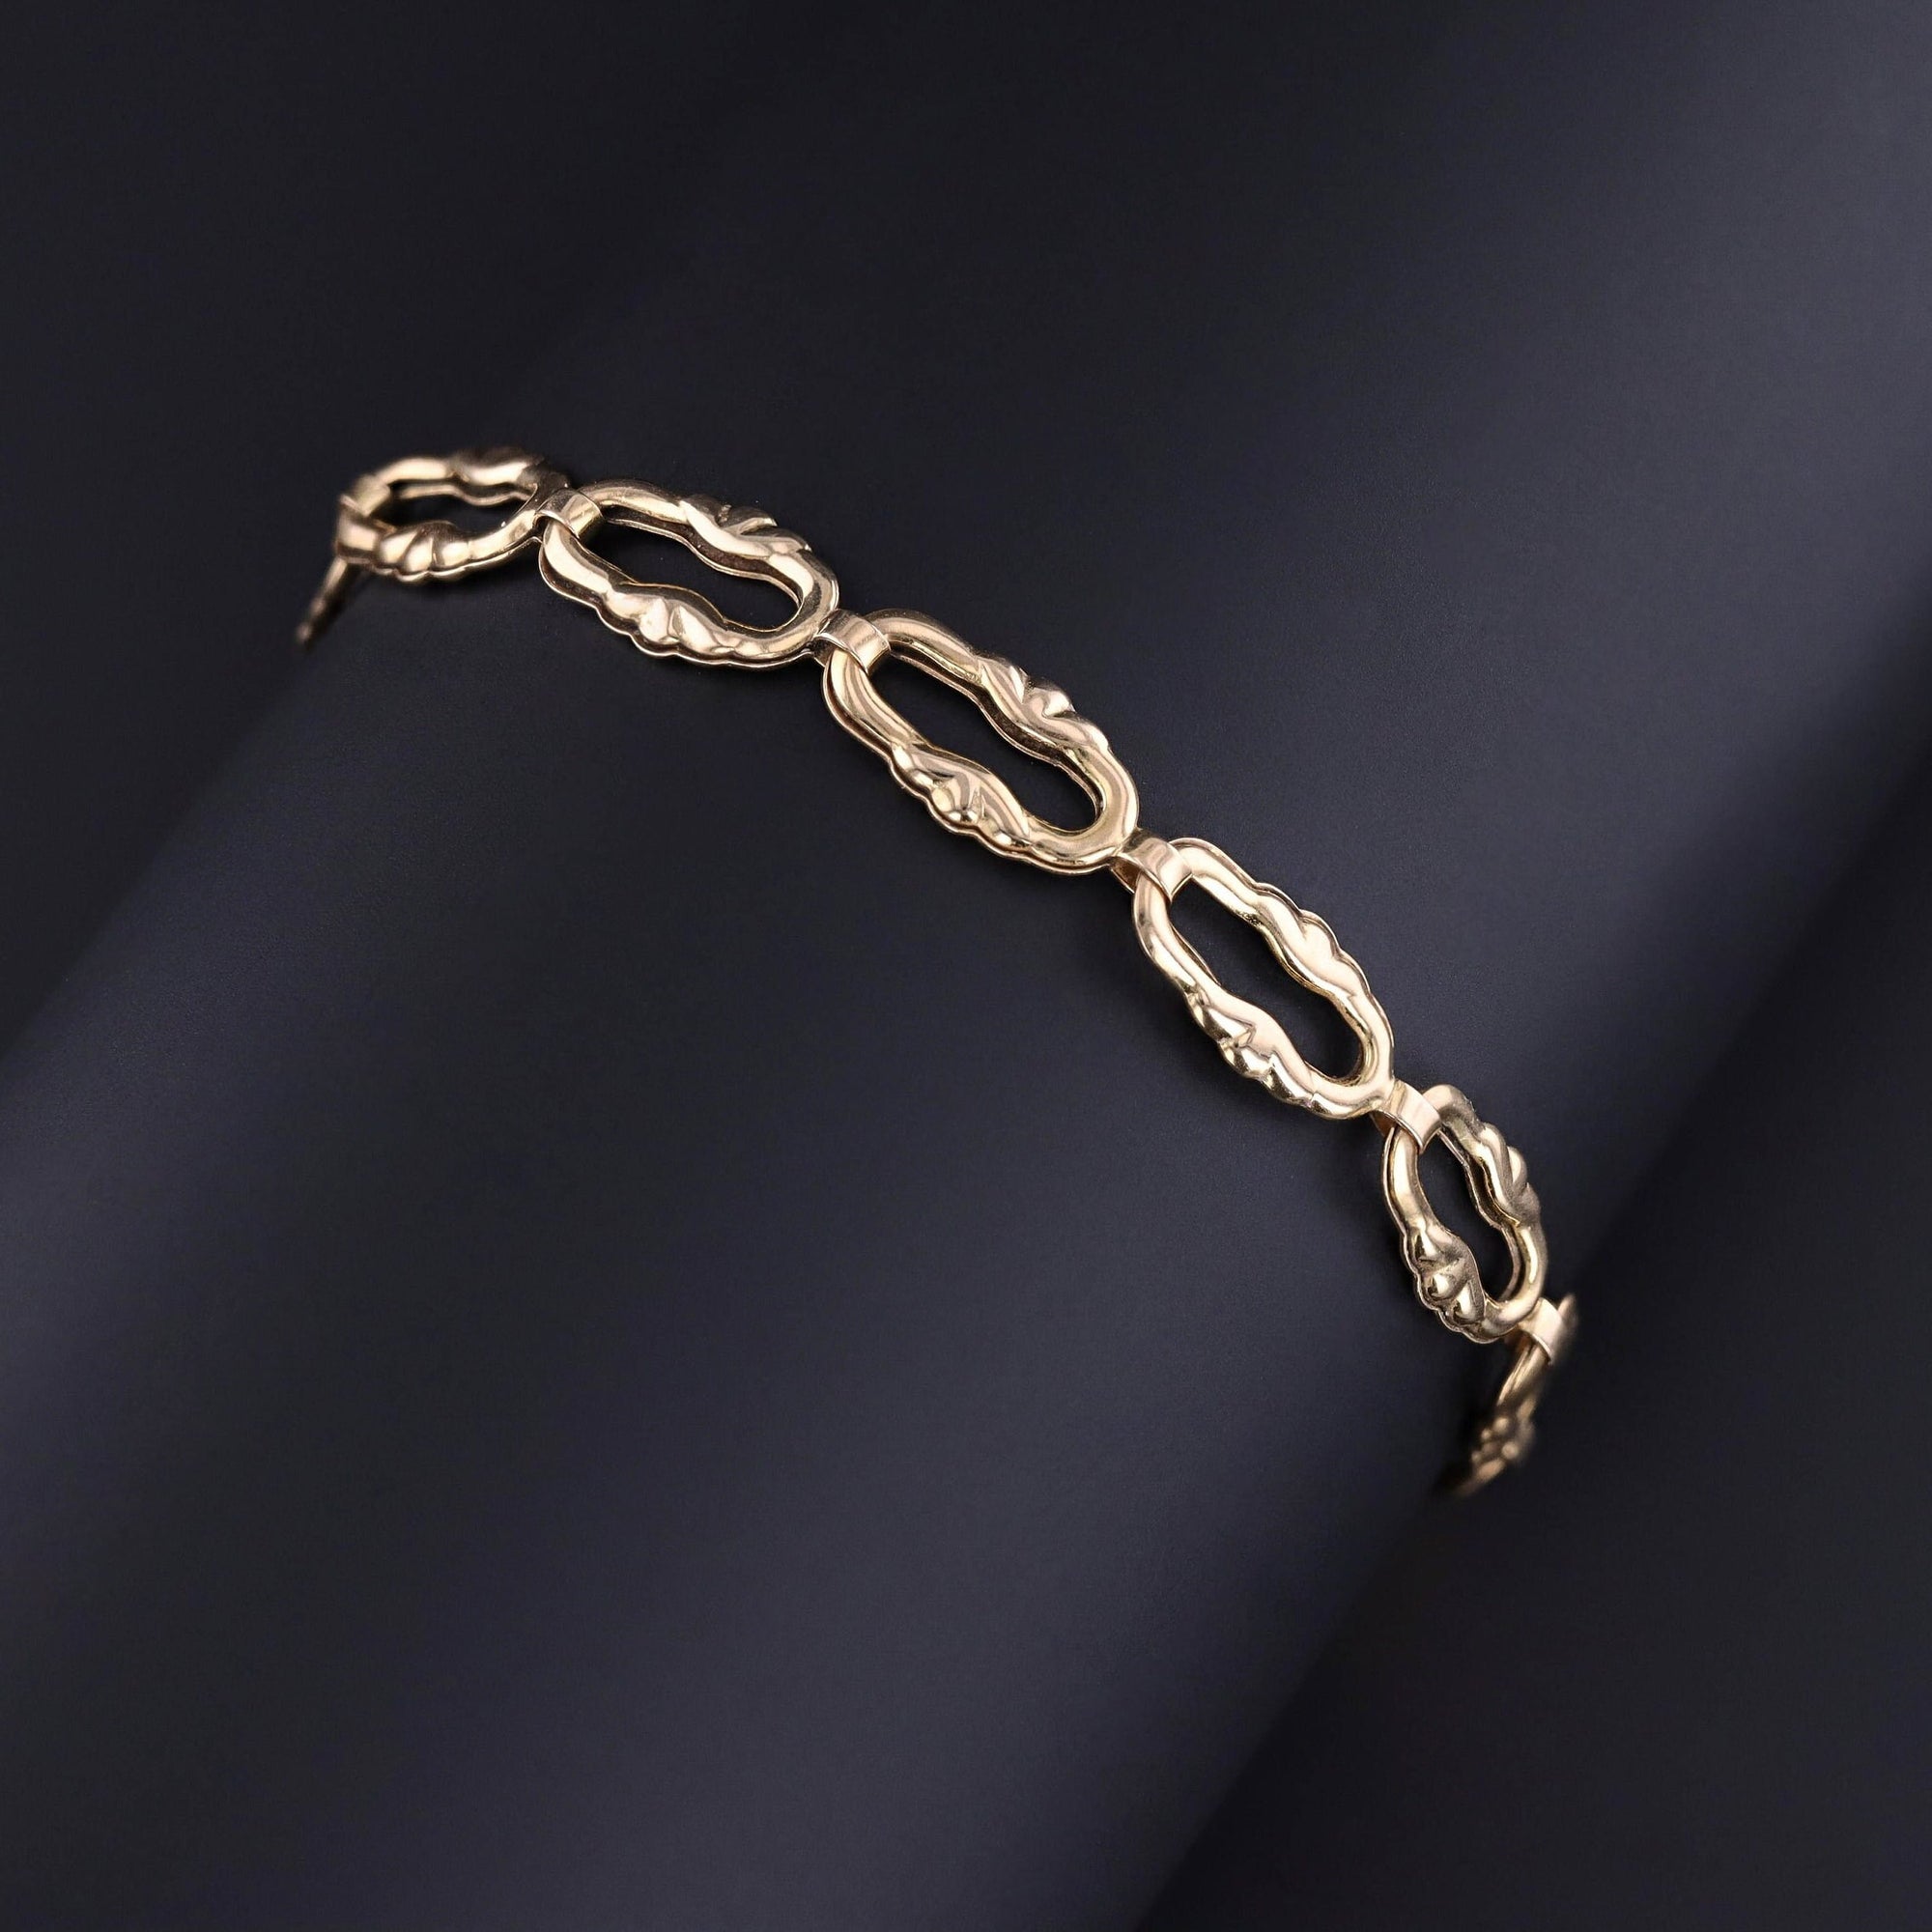 Vintage Charm Bracelet of 14k Gold